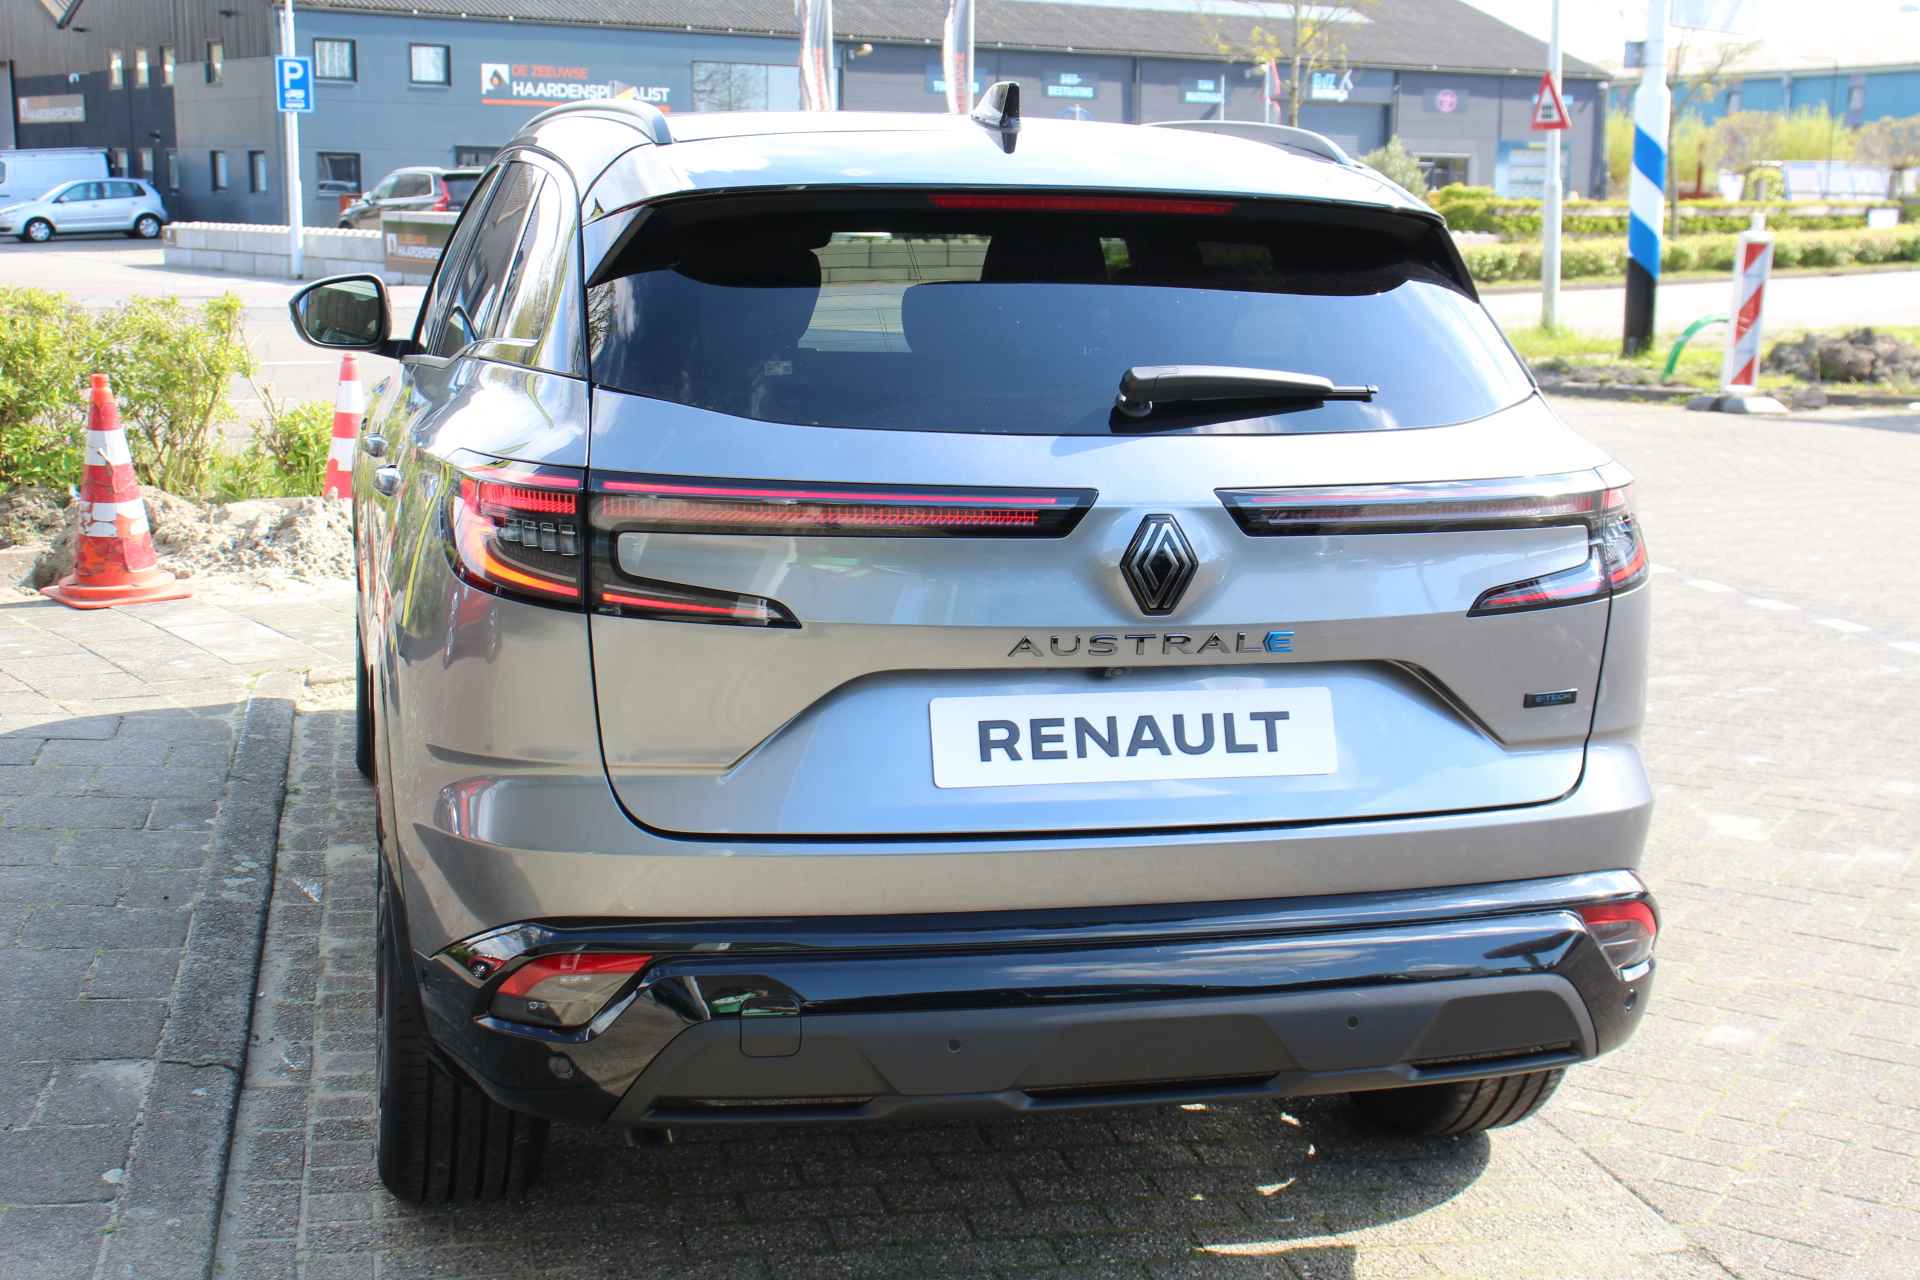 Renault Austral 1.2 E-Tech Hybrid 200 Techno Esprit Alpine Pack advanced driving assist/ Pack safety/ Panoramisch vast glazen dak/ Electrisch bedienbare achterklep - 14/43